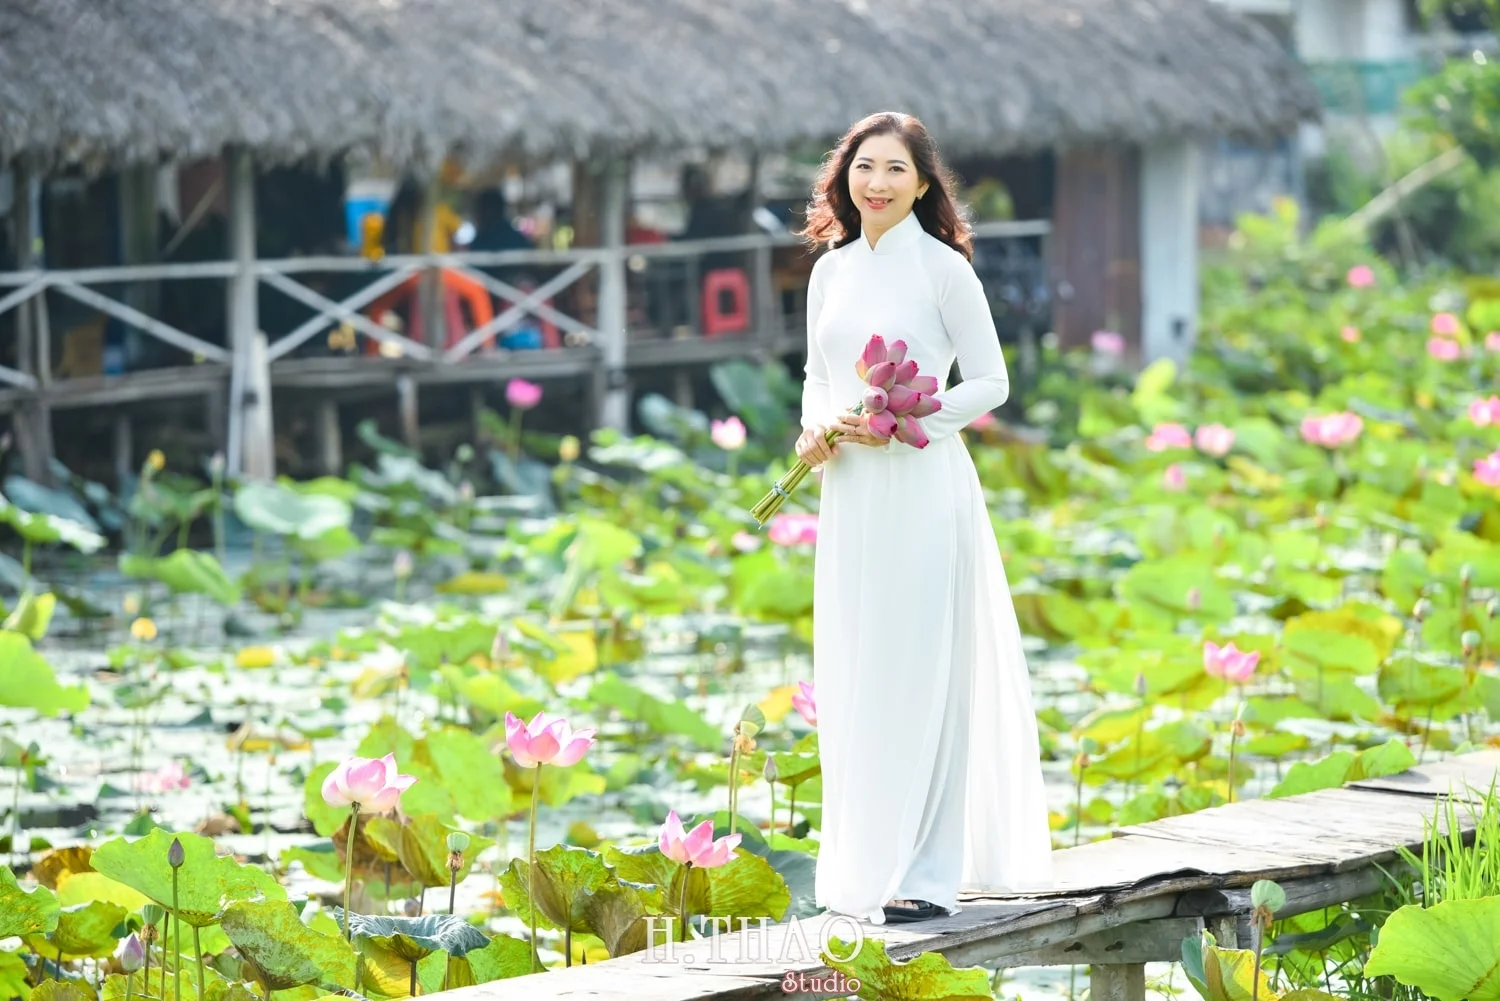 Chụp hình họa với hoa sen rất đẹp - HThao Studio bên trên Tp.HCM